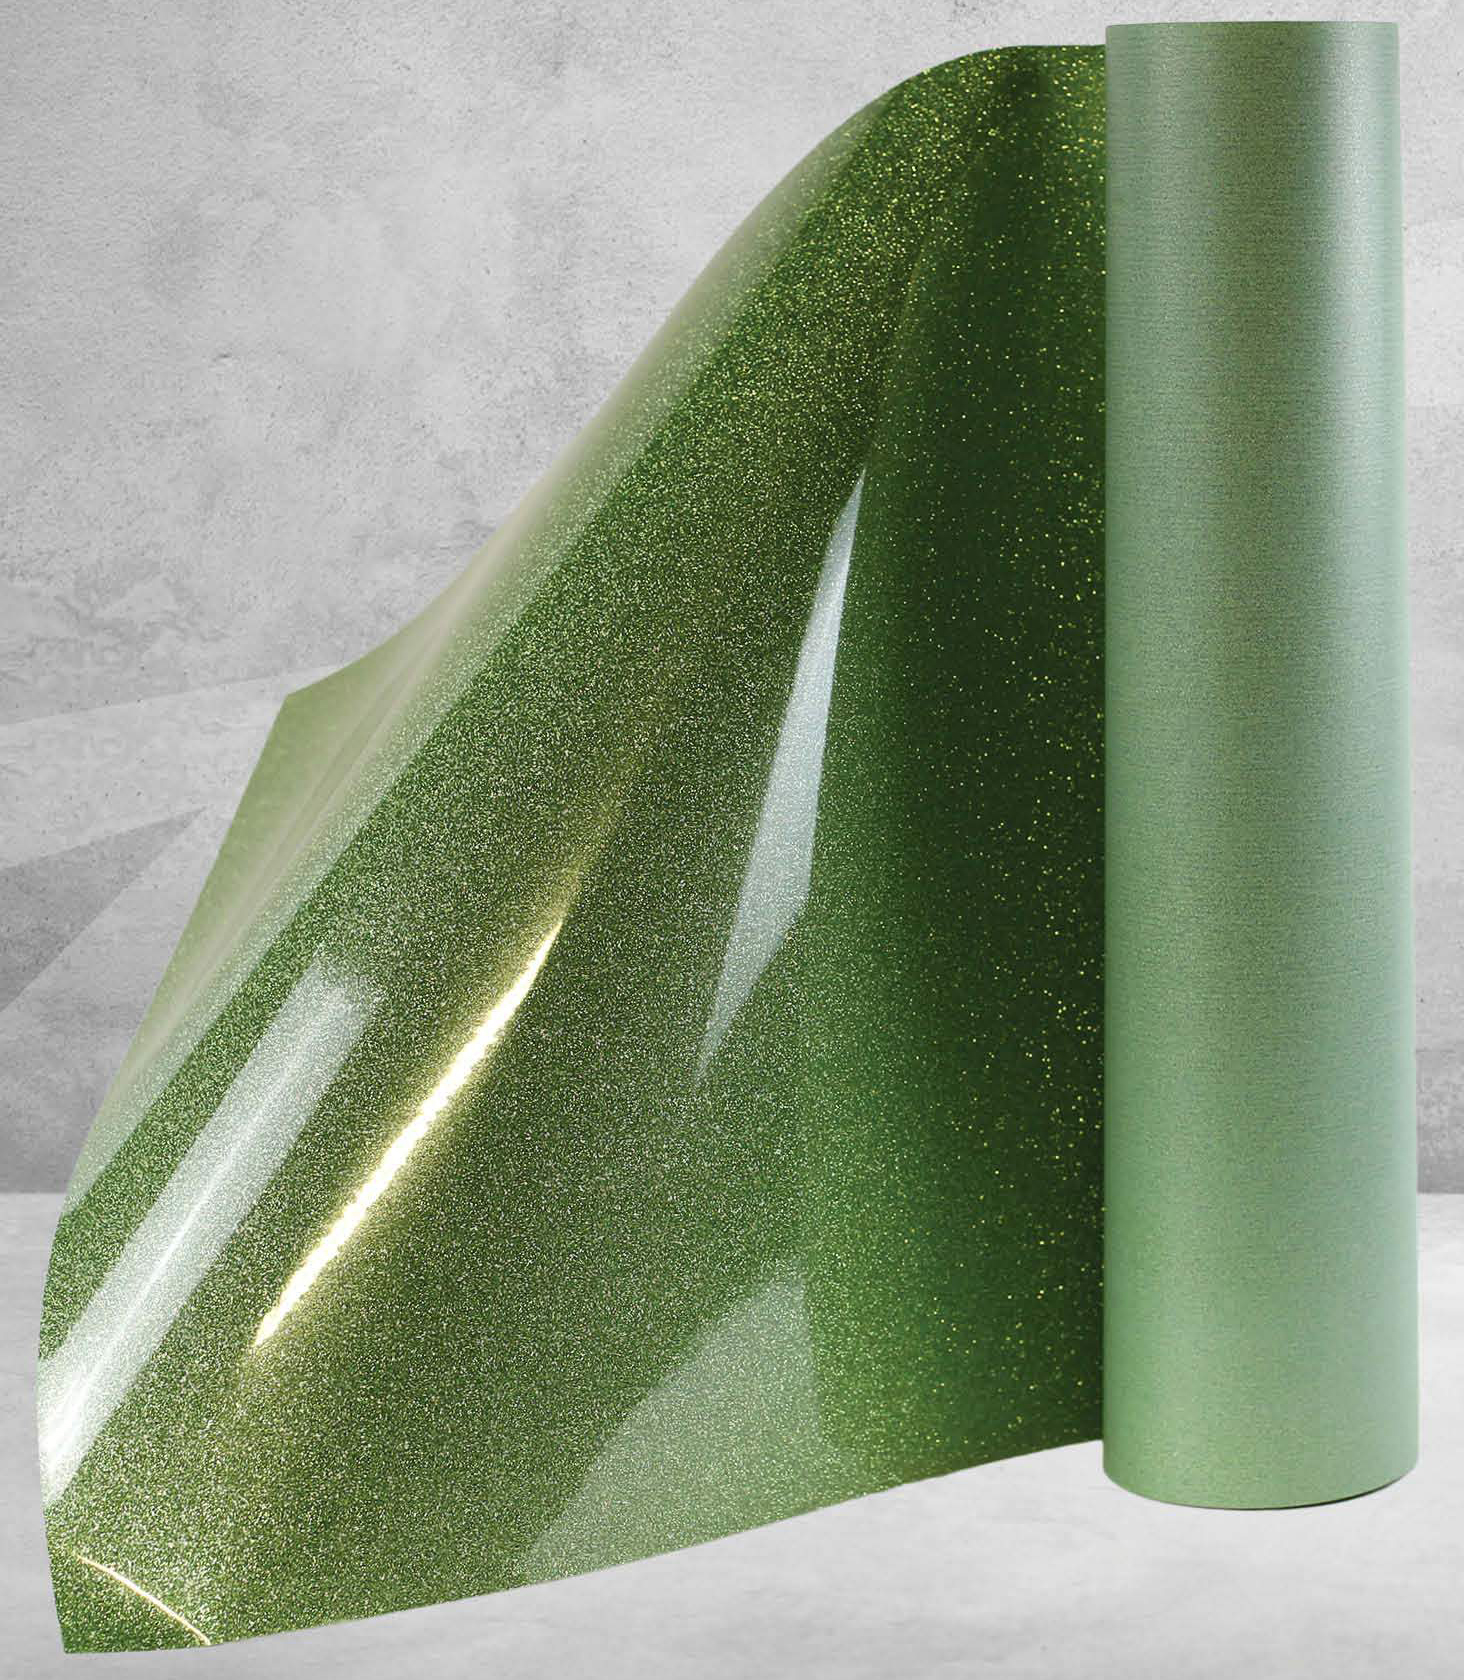 Emerald Glitter Heat Transfer Vinyl – MyVinylCircle